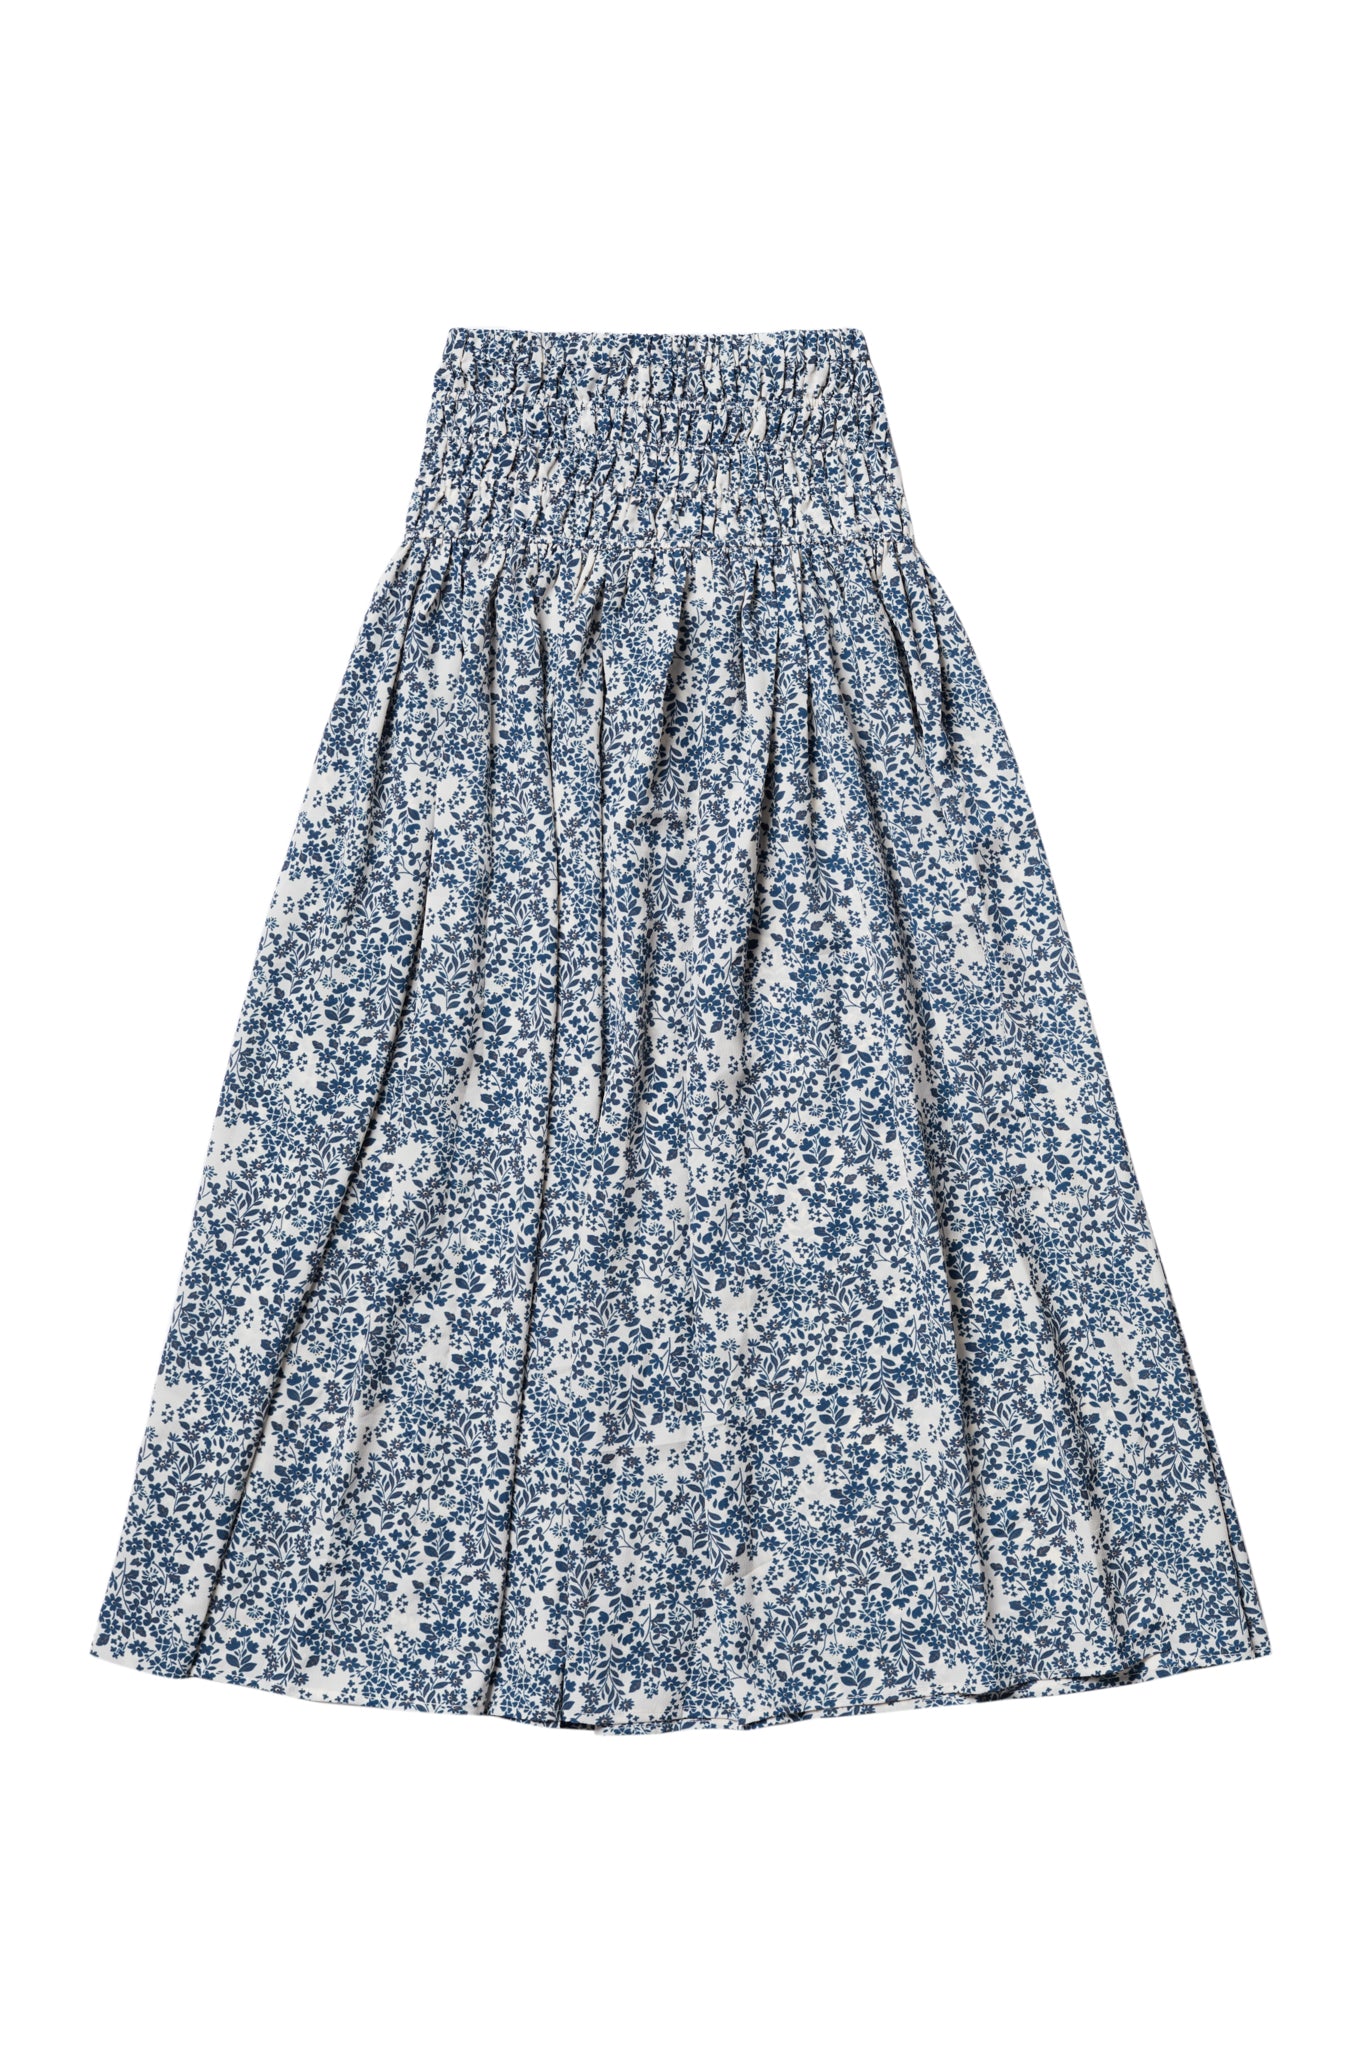 Smocked Maxi Skirt in Blue Flower Print #4071F